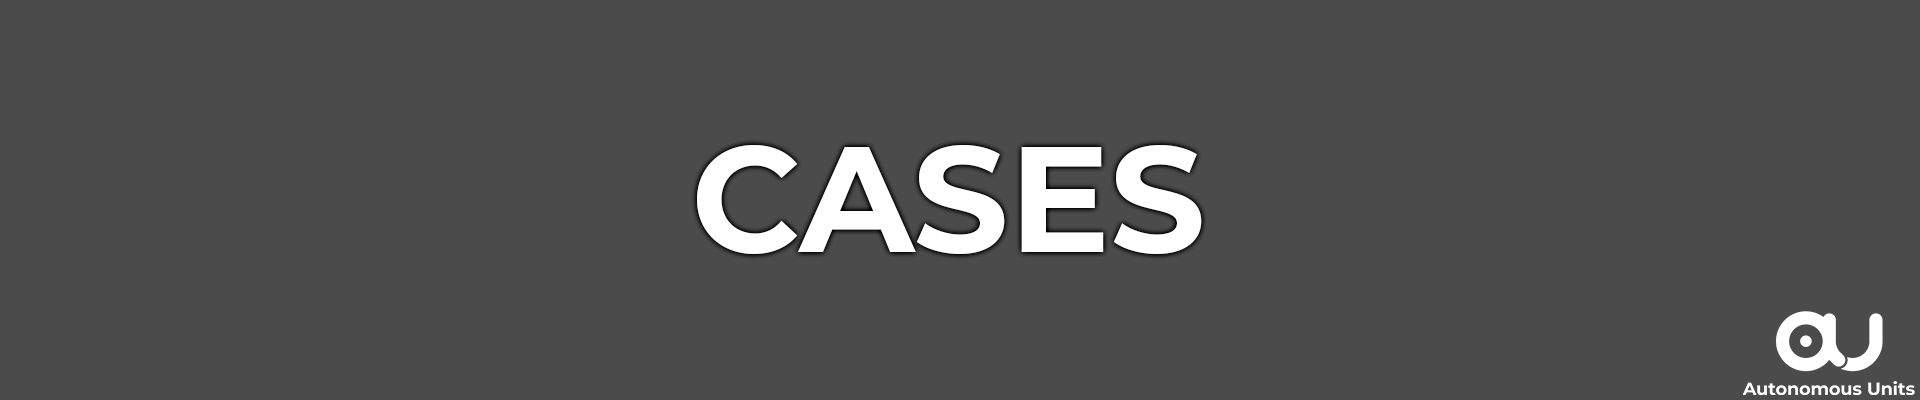 Banner for cases segment